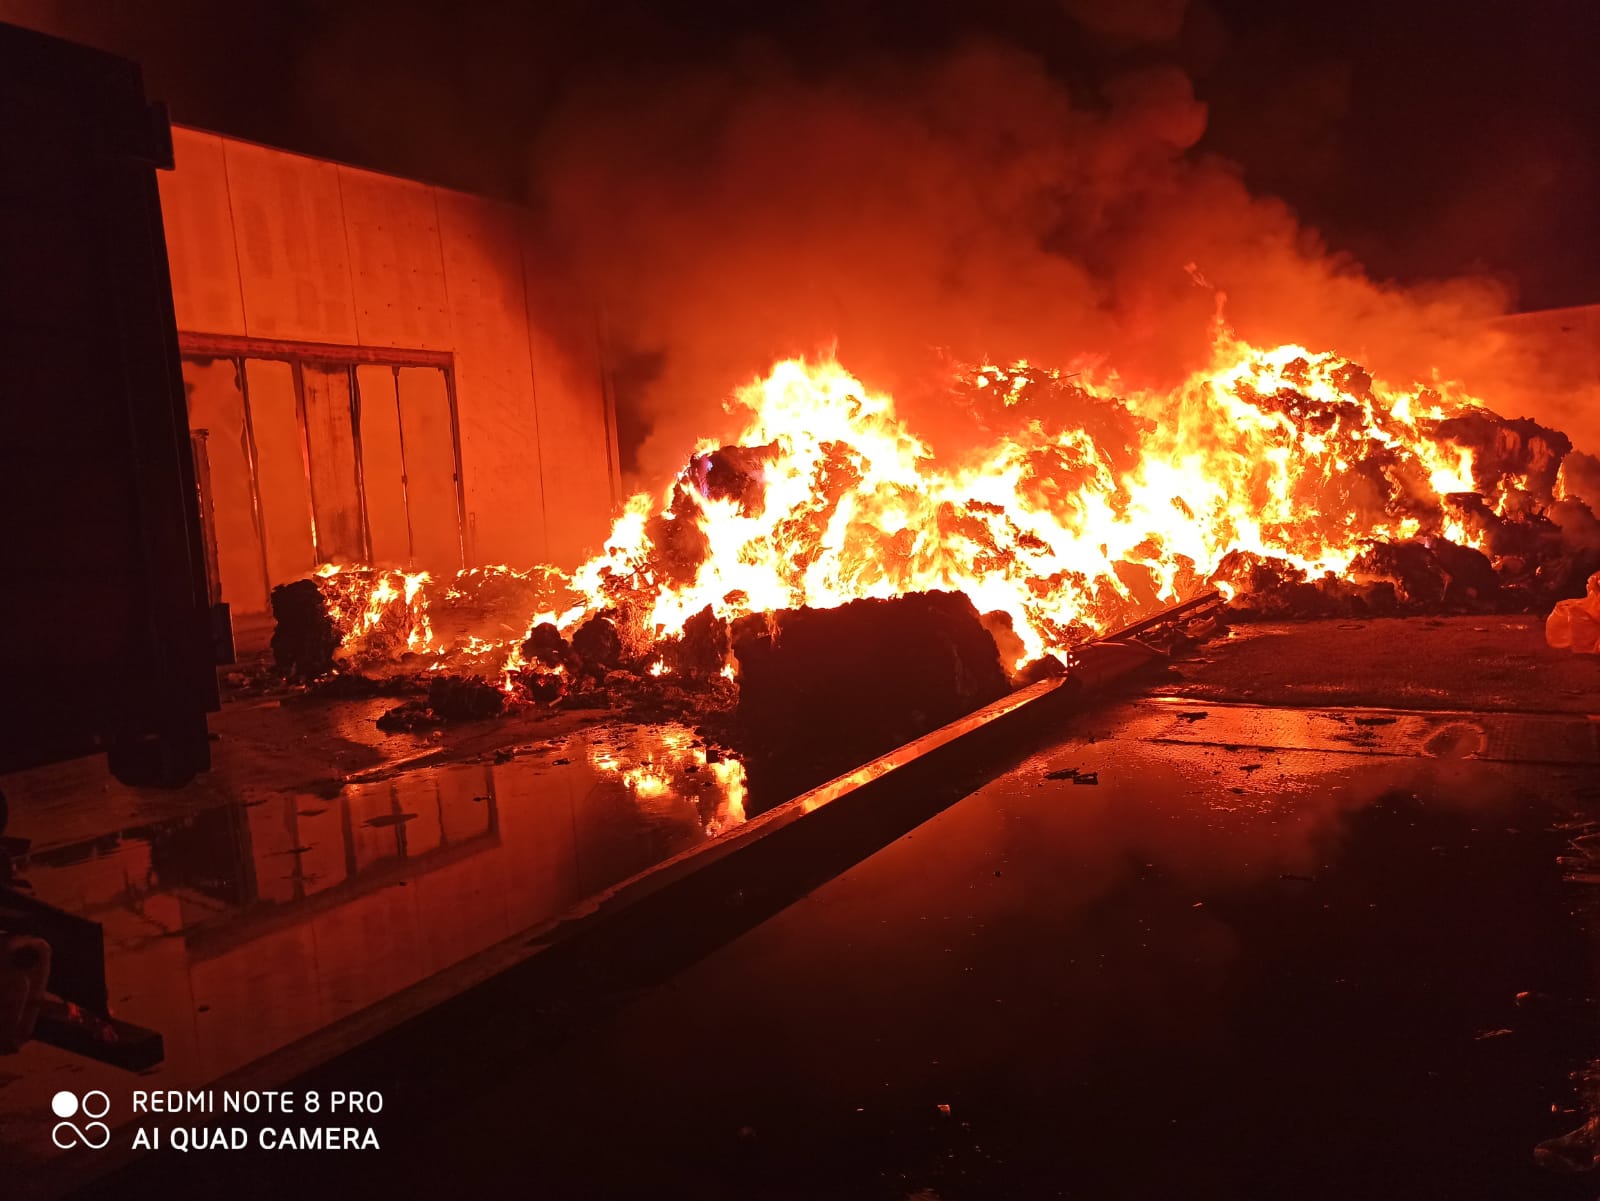 Violento incendio in un centro riciclo rifiuti cartacei ad Avezzano